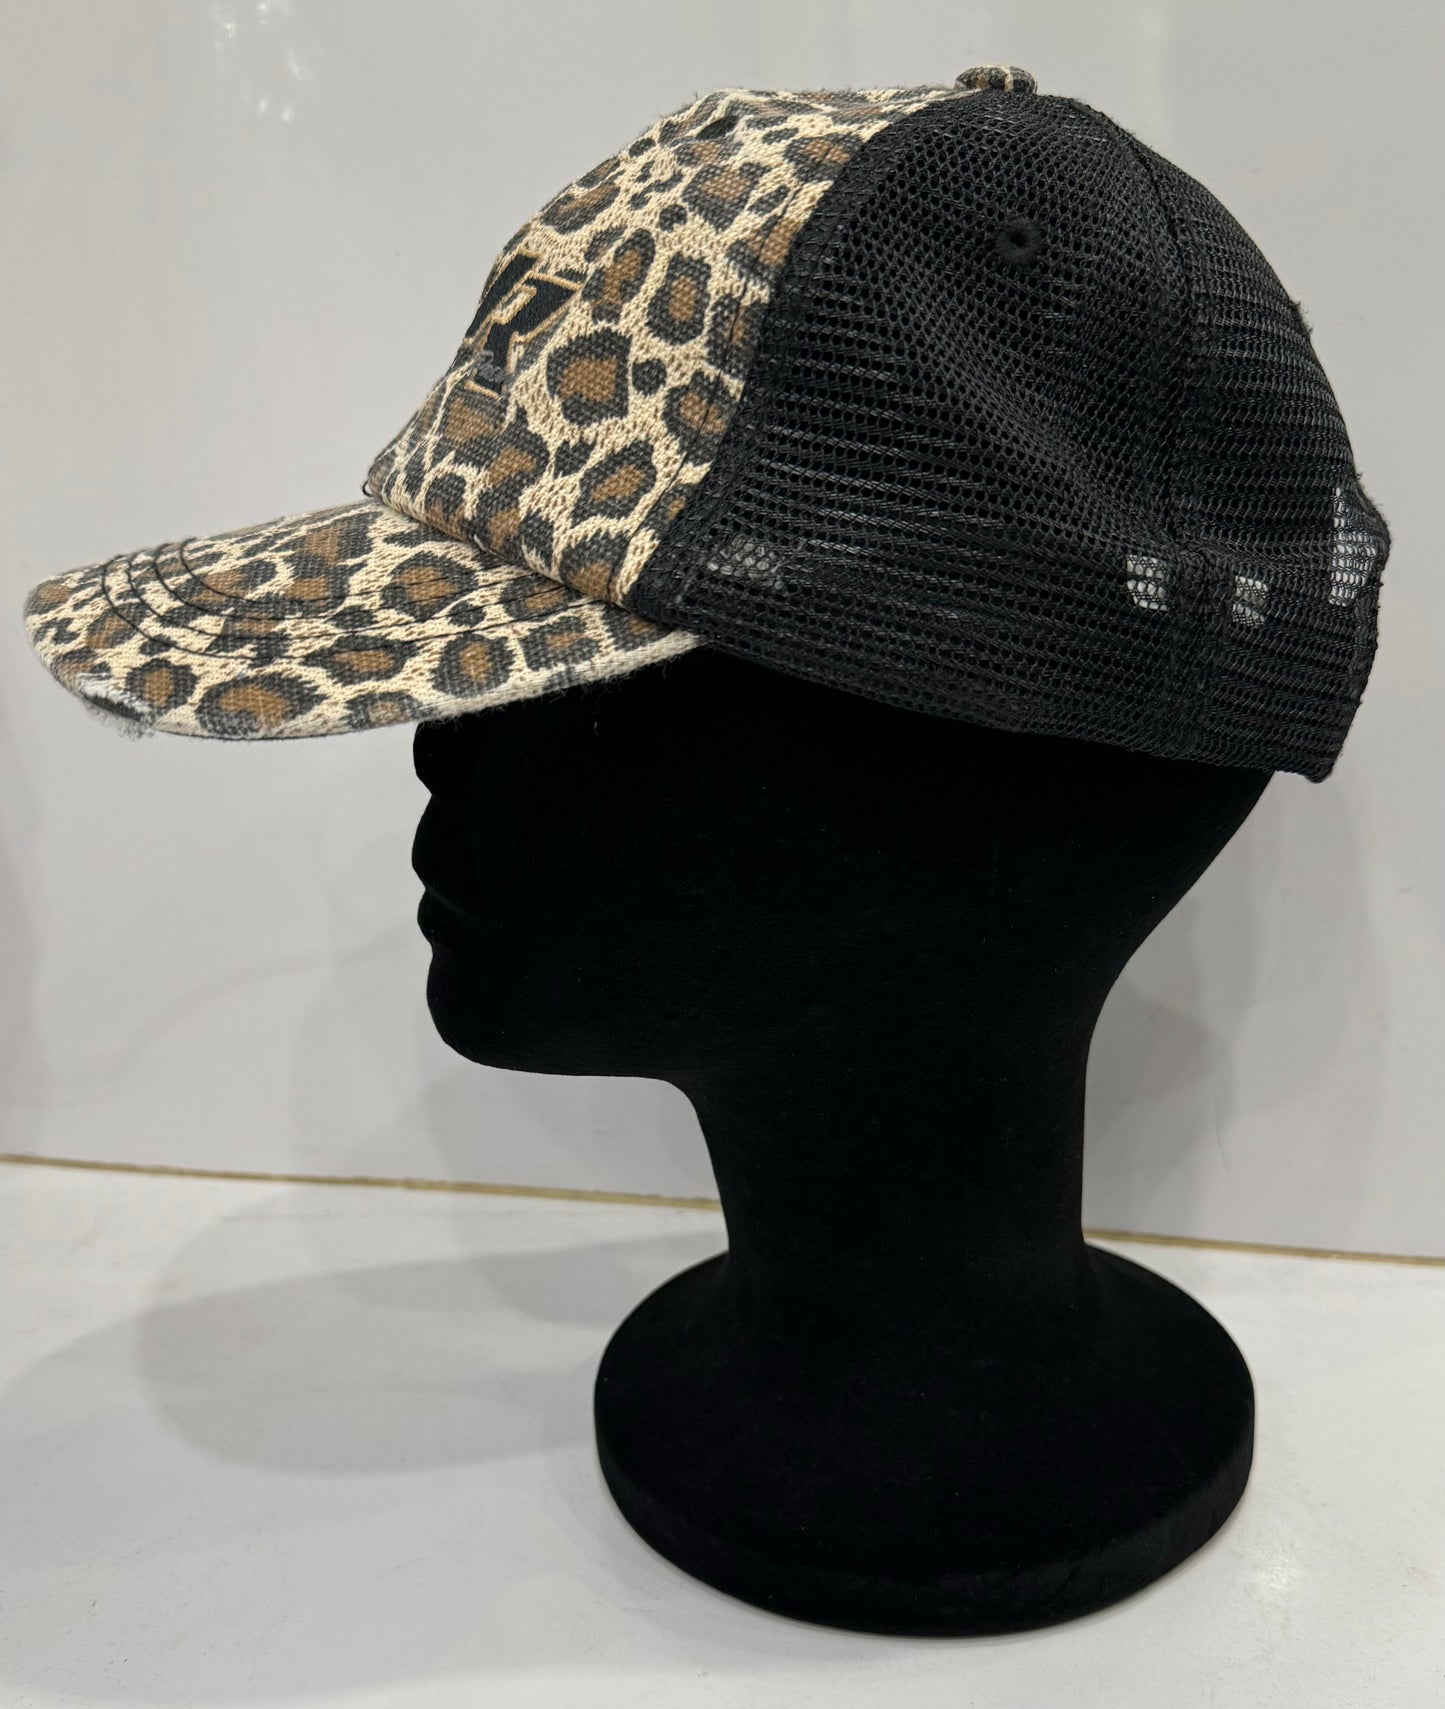 Ladies JJR Cheetah SnapBack Hat